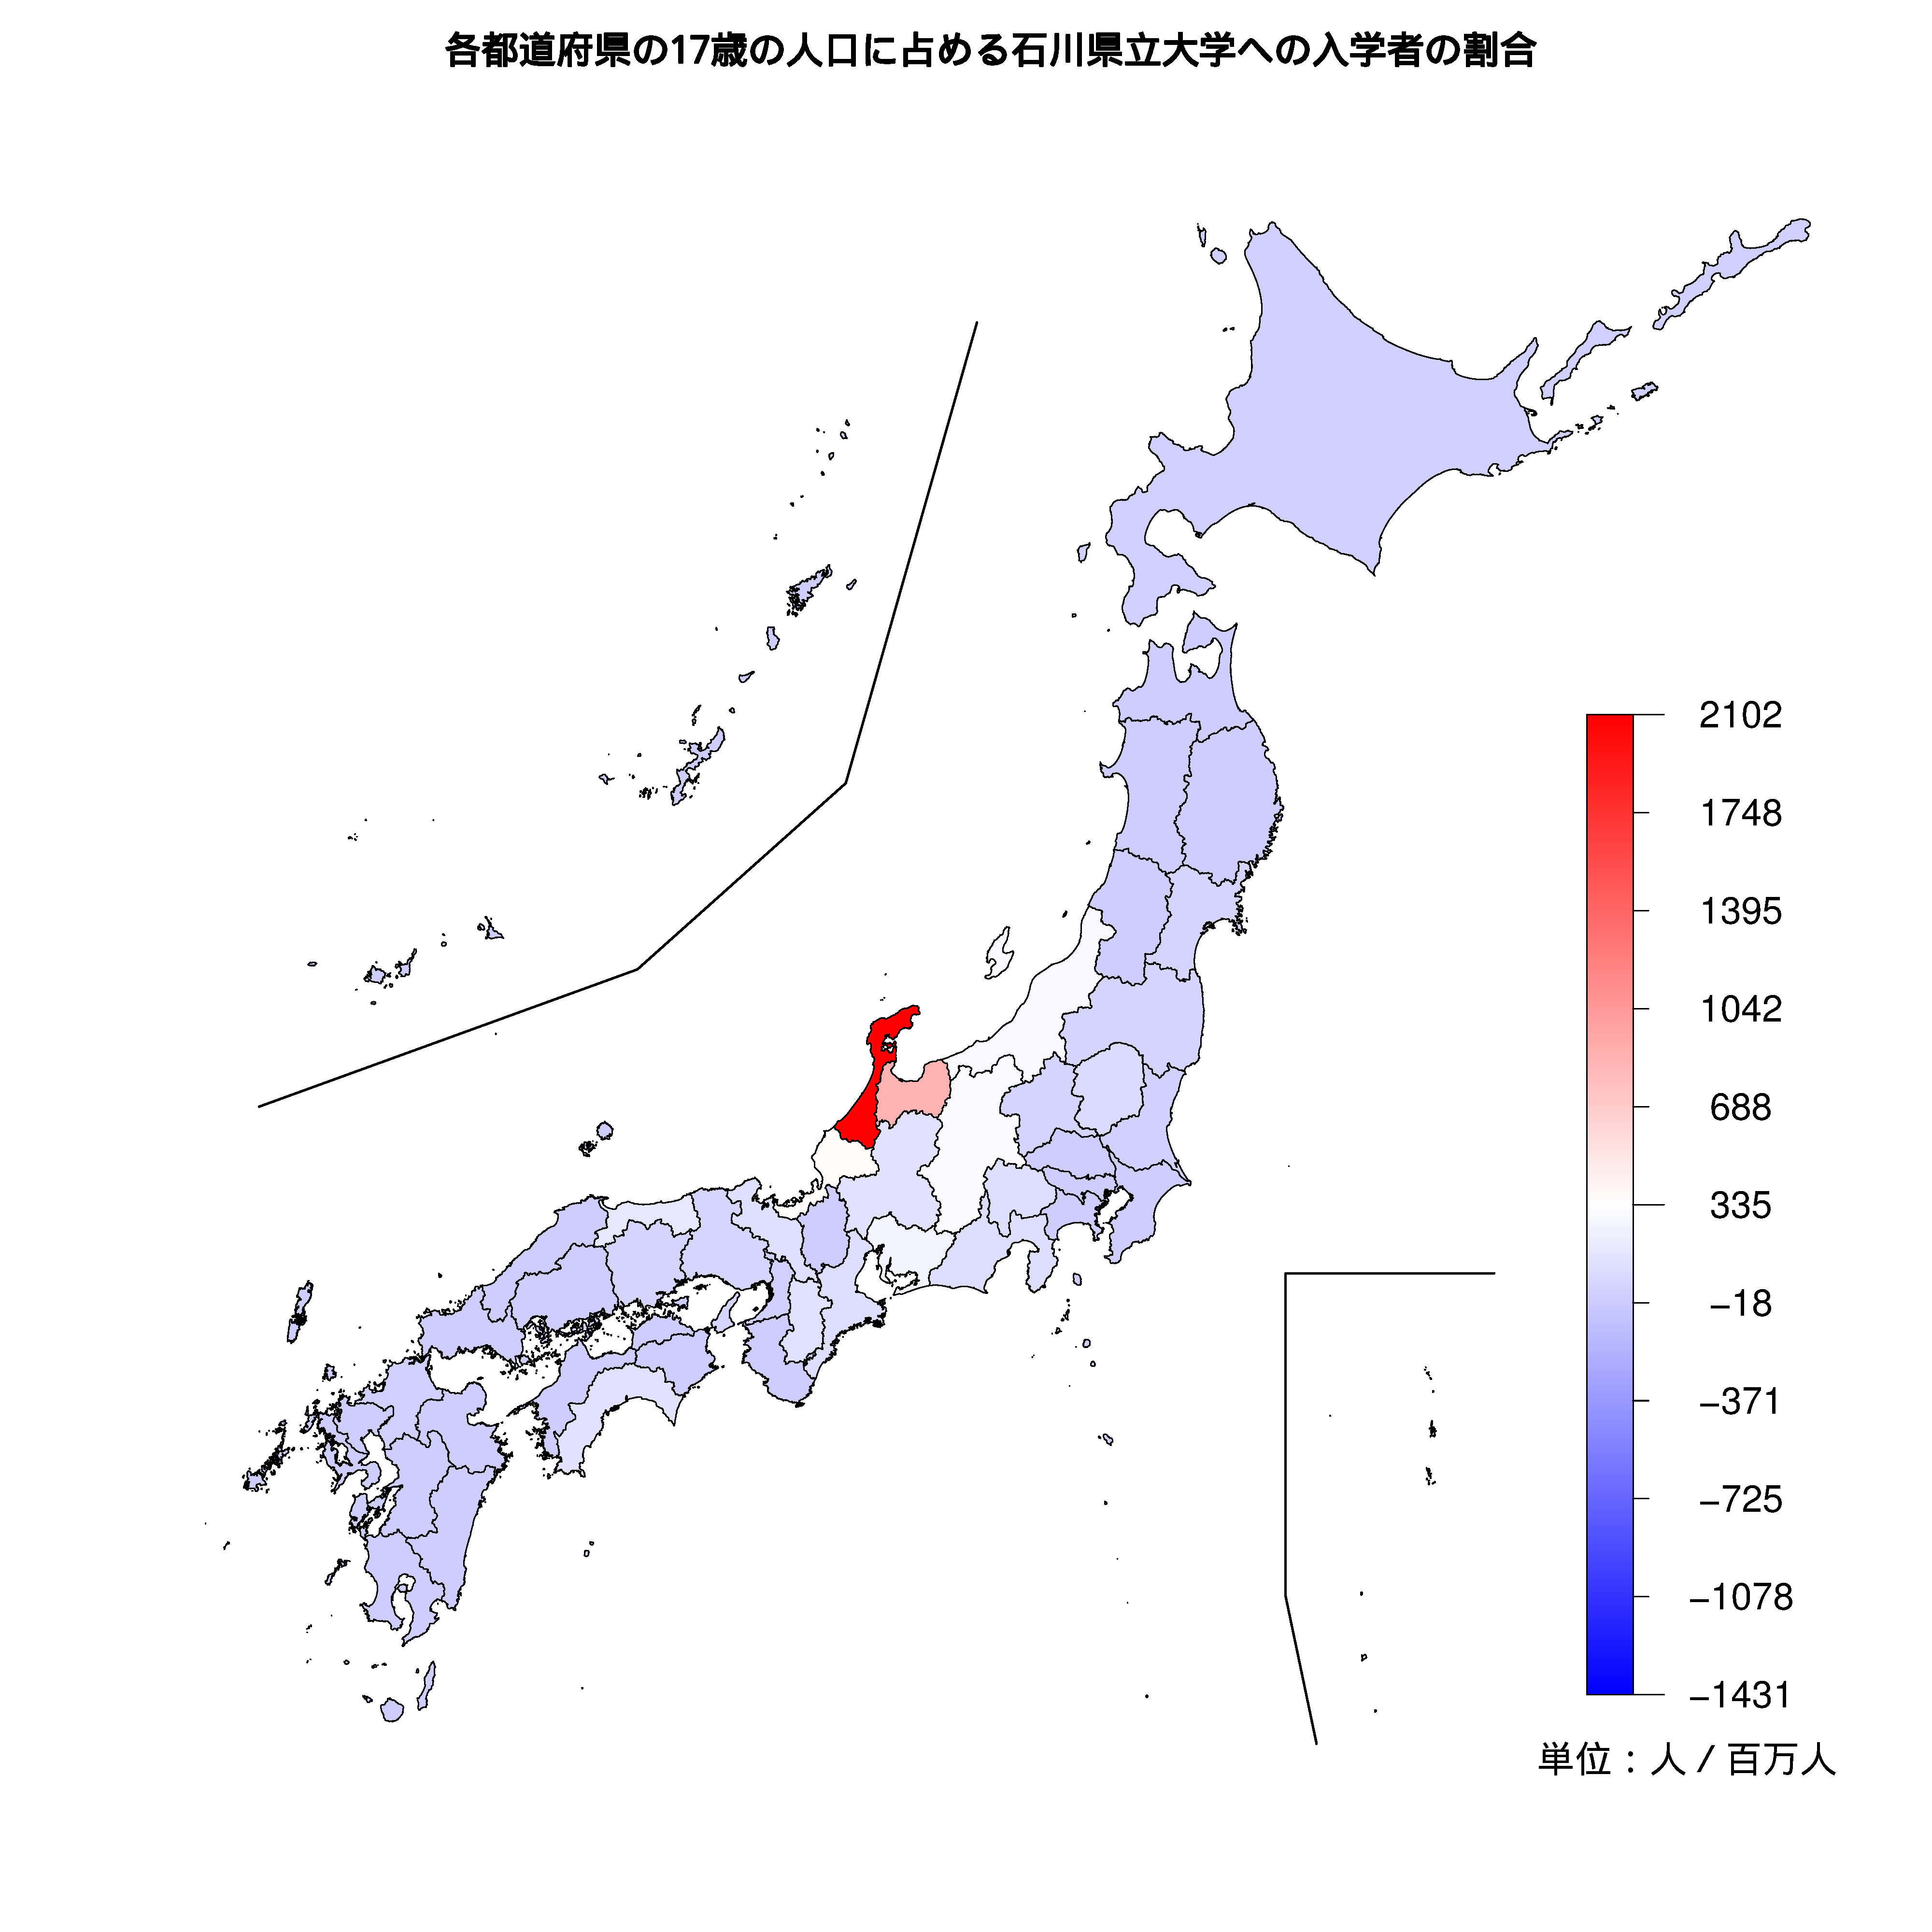 石川県立大学への入学者が多い都道府県の色分け地図